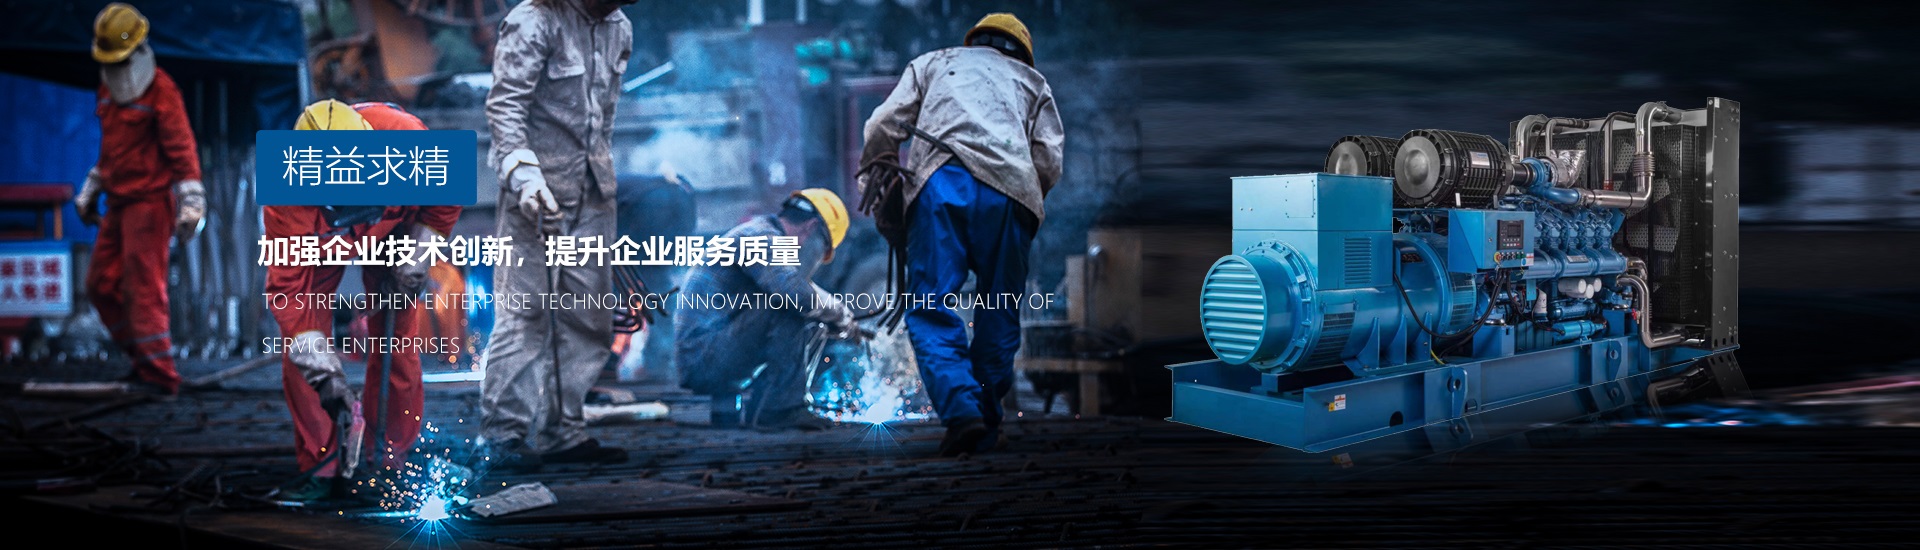 广州发电机厂家追求精益求精、加强企业技术创新、提升企业服务质量